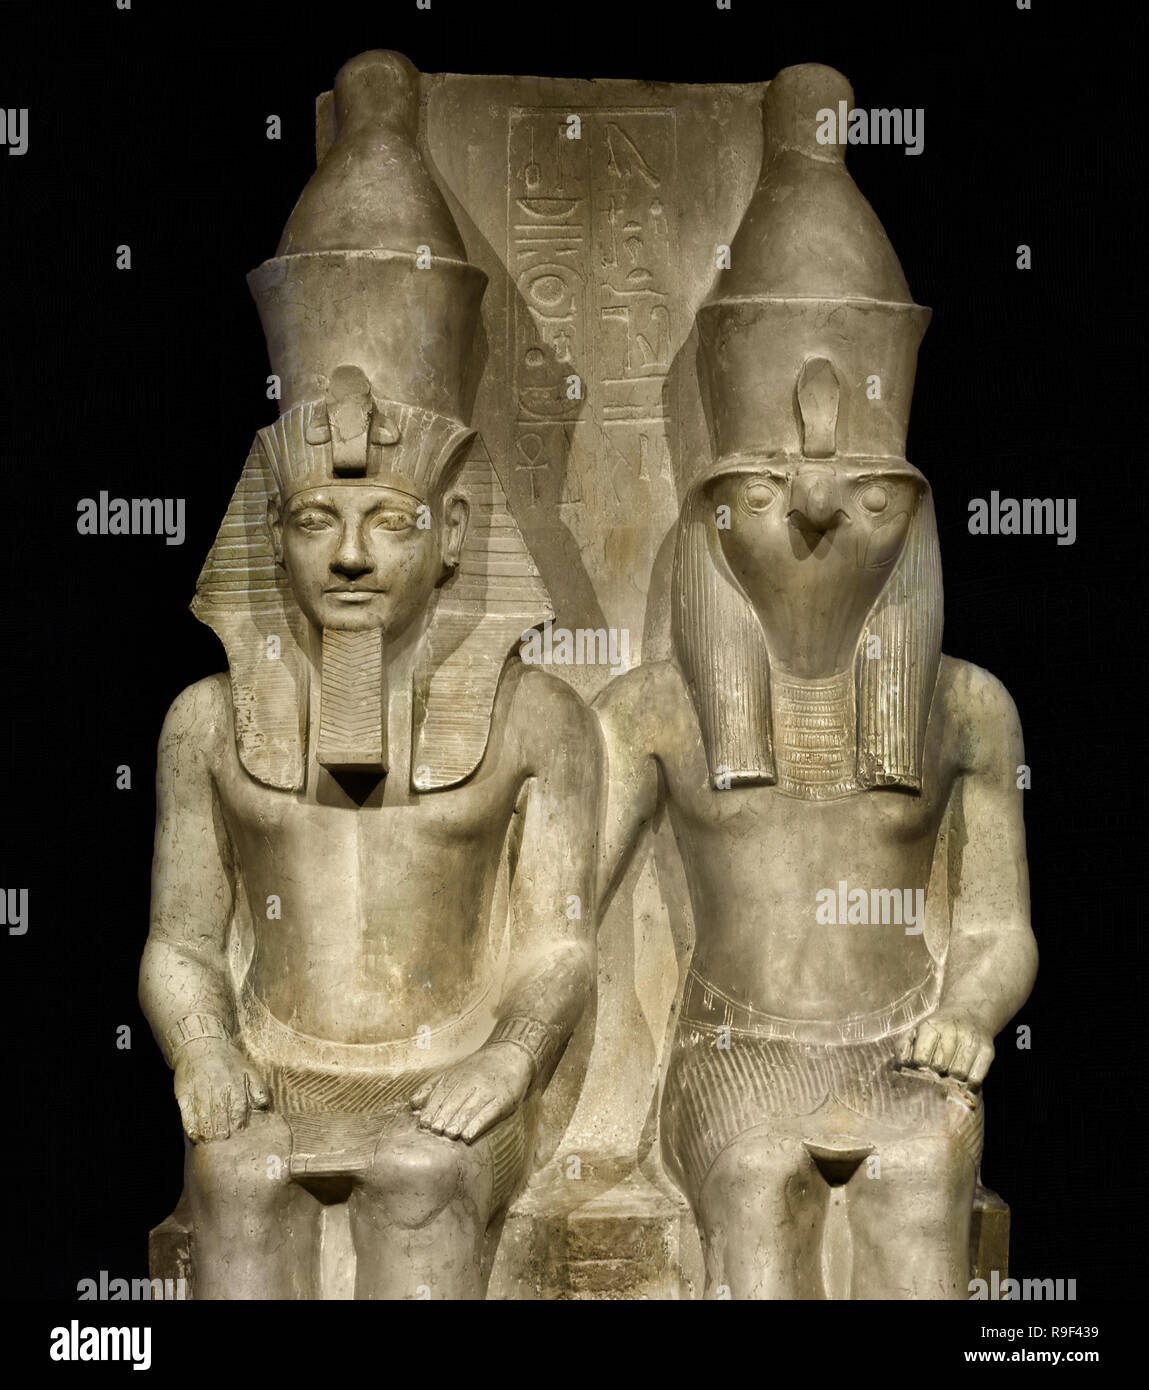 Immagine di Horus e Horemheb questo tempio immagine mostra il dio Horus e il Faraone Horemheb (1319-1305 a.C.) seduti fianco a fianco. Horus porta un Falcon's testa come una potenza celeste. Il re ha le stesse dimensioni di quello di Dio, perché secondo gli Egiziani che è ugualmente potente. Egli è l'aspetto terrena di Horus e quindi di se stesso a Dio. (1,52 metri di calcare Periodo: Nuovo Regno, XVIII dinastia (1319-1305 a.C.) Egitto, egiziano. Foto Stock